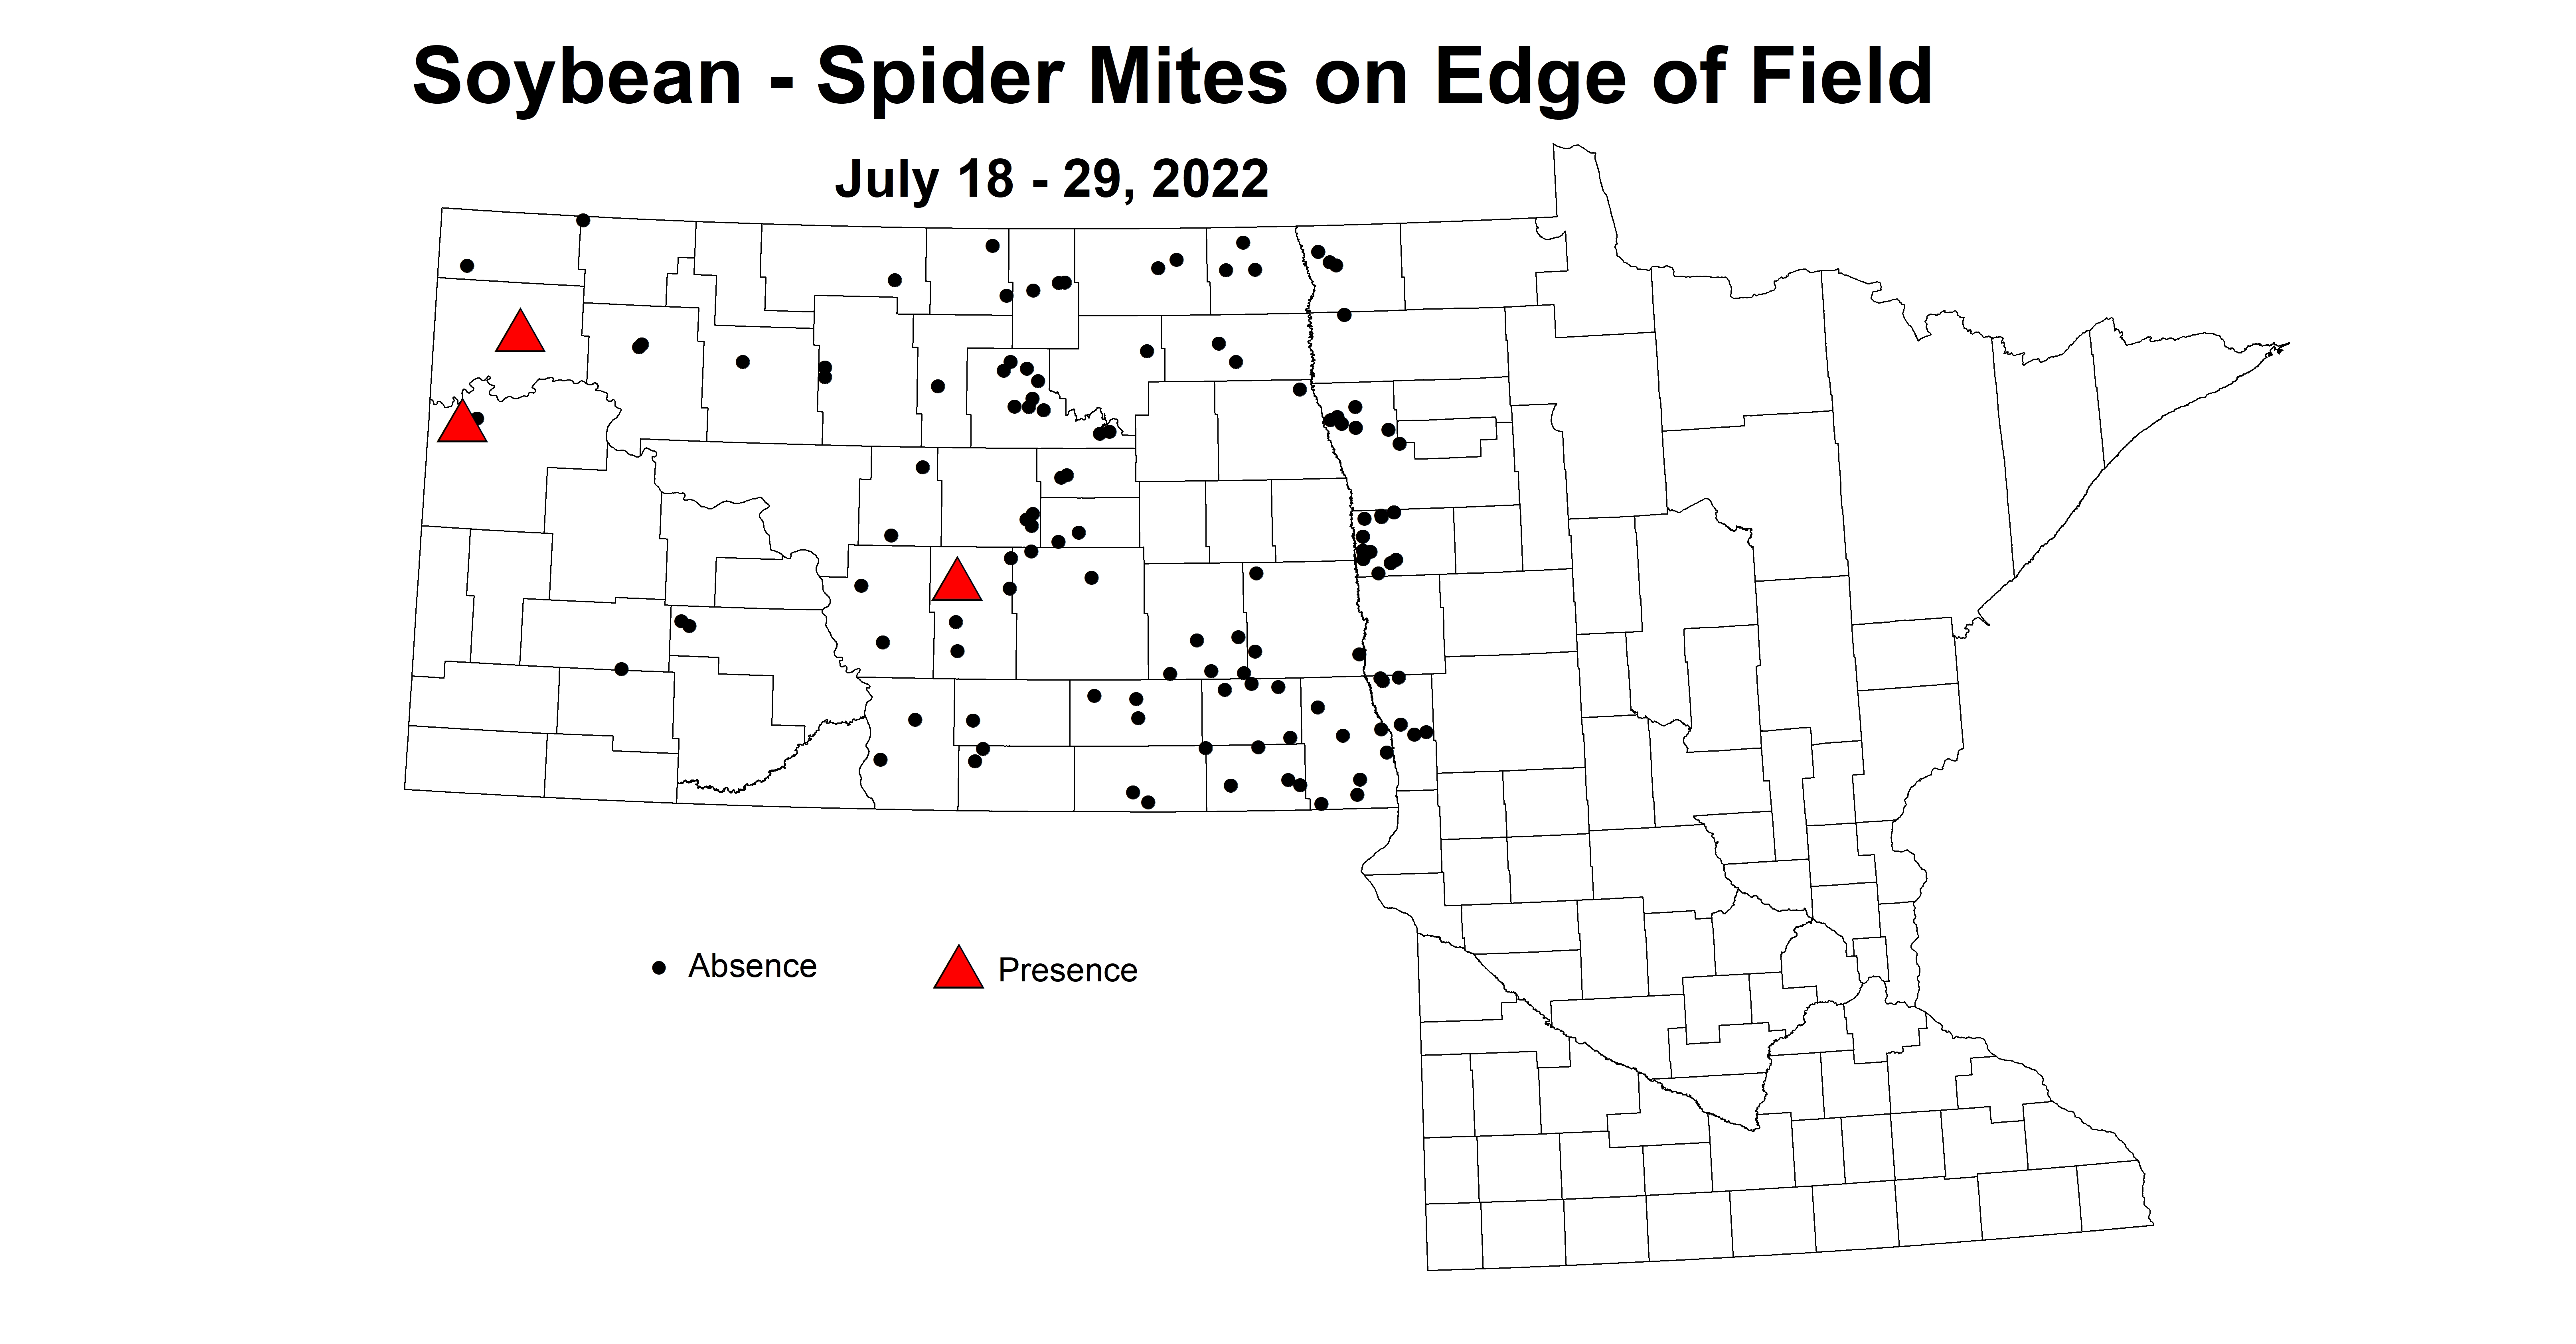 soybean spider mites on edge 2022 7.18-7.29.jpg